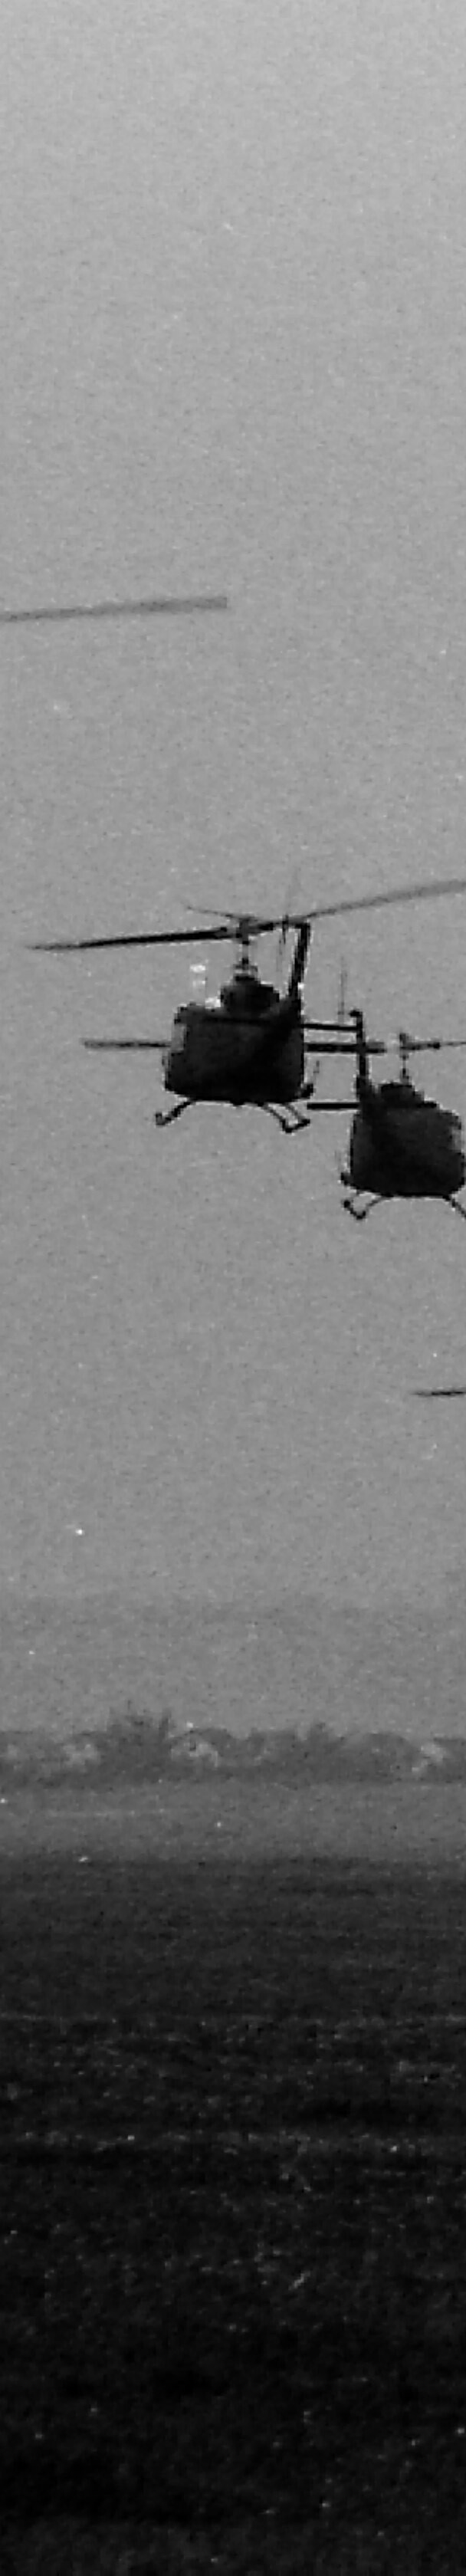 Choppers landing at the Flugplatz